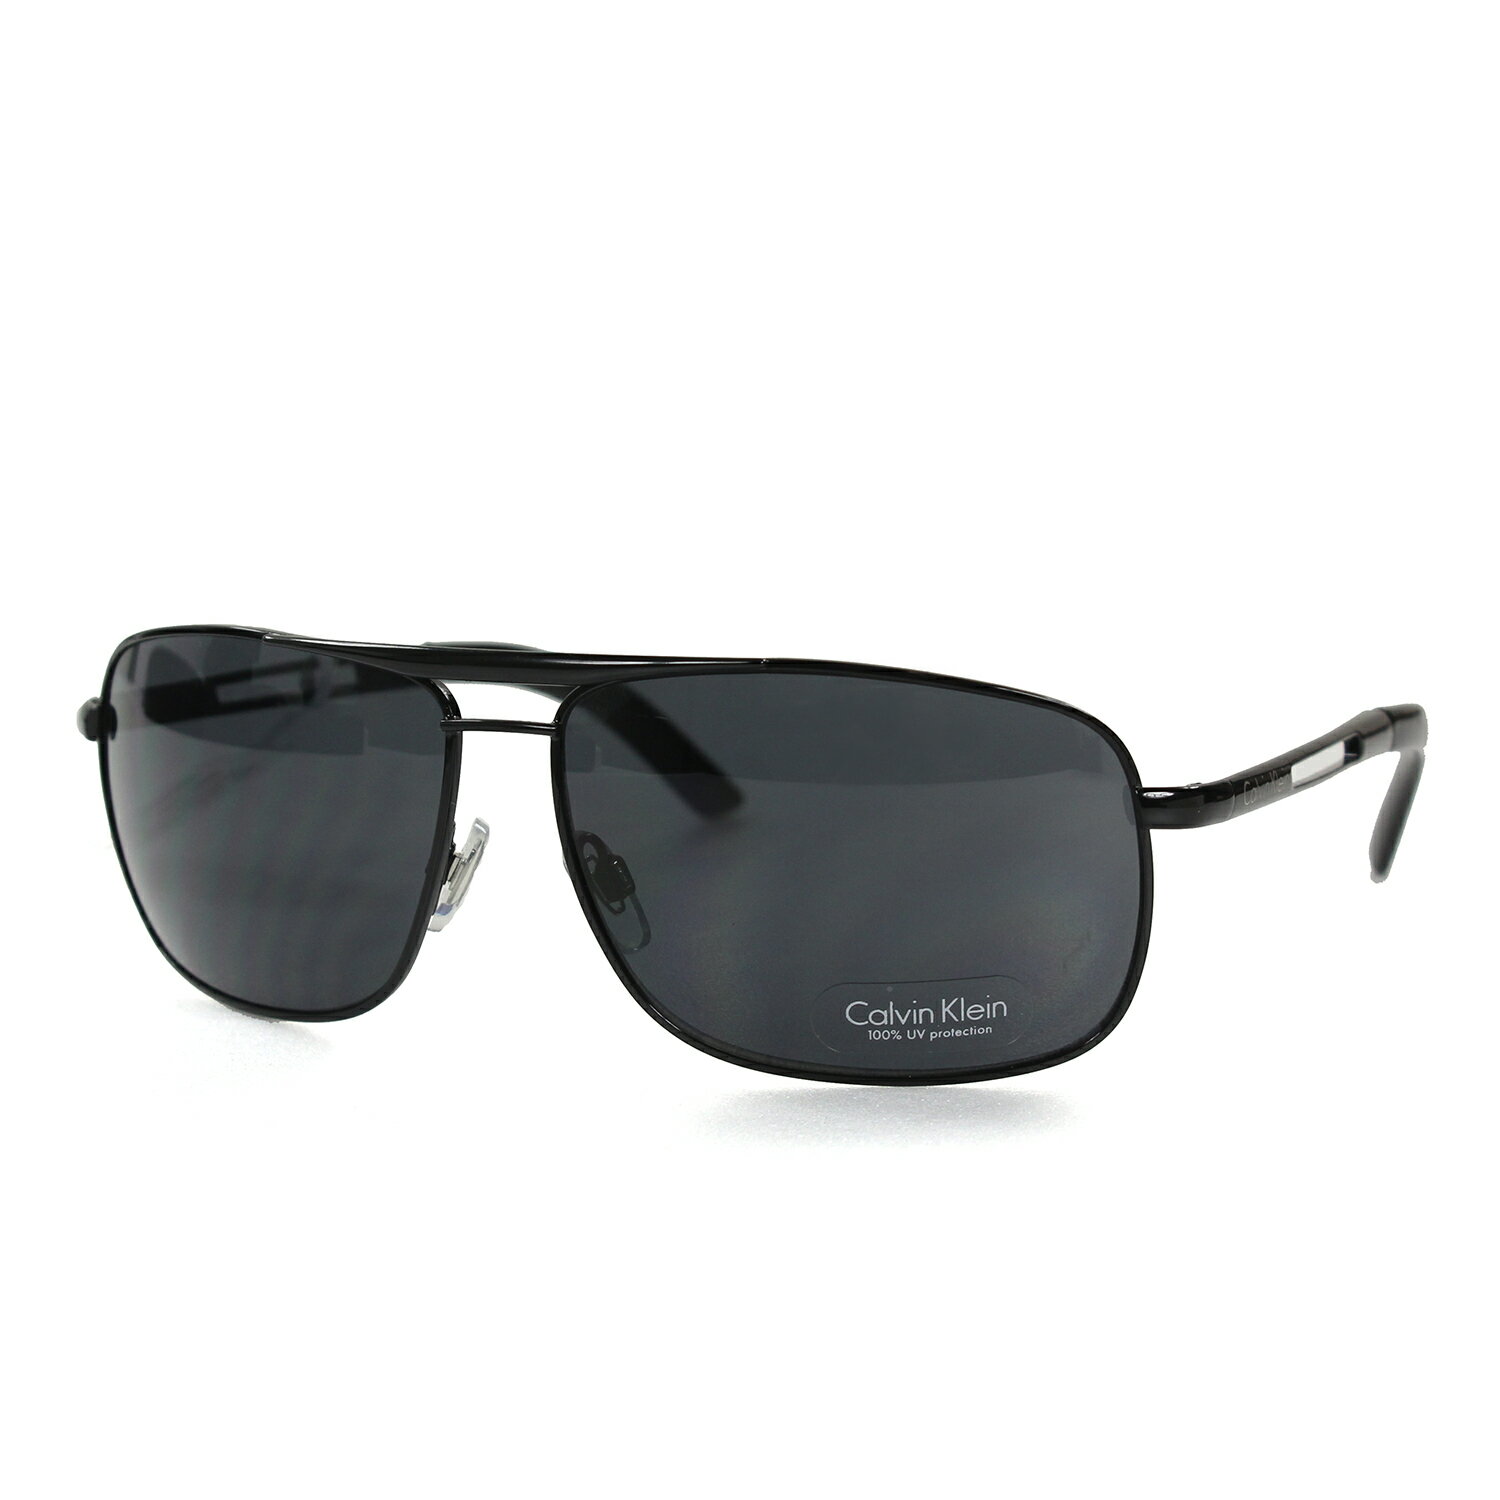 美國百分百【全新真品】Calvin Klein 太陽眼鏡 CK 墨鏡 配件 眼鏡 抗UV 騎士 黑灰 F064